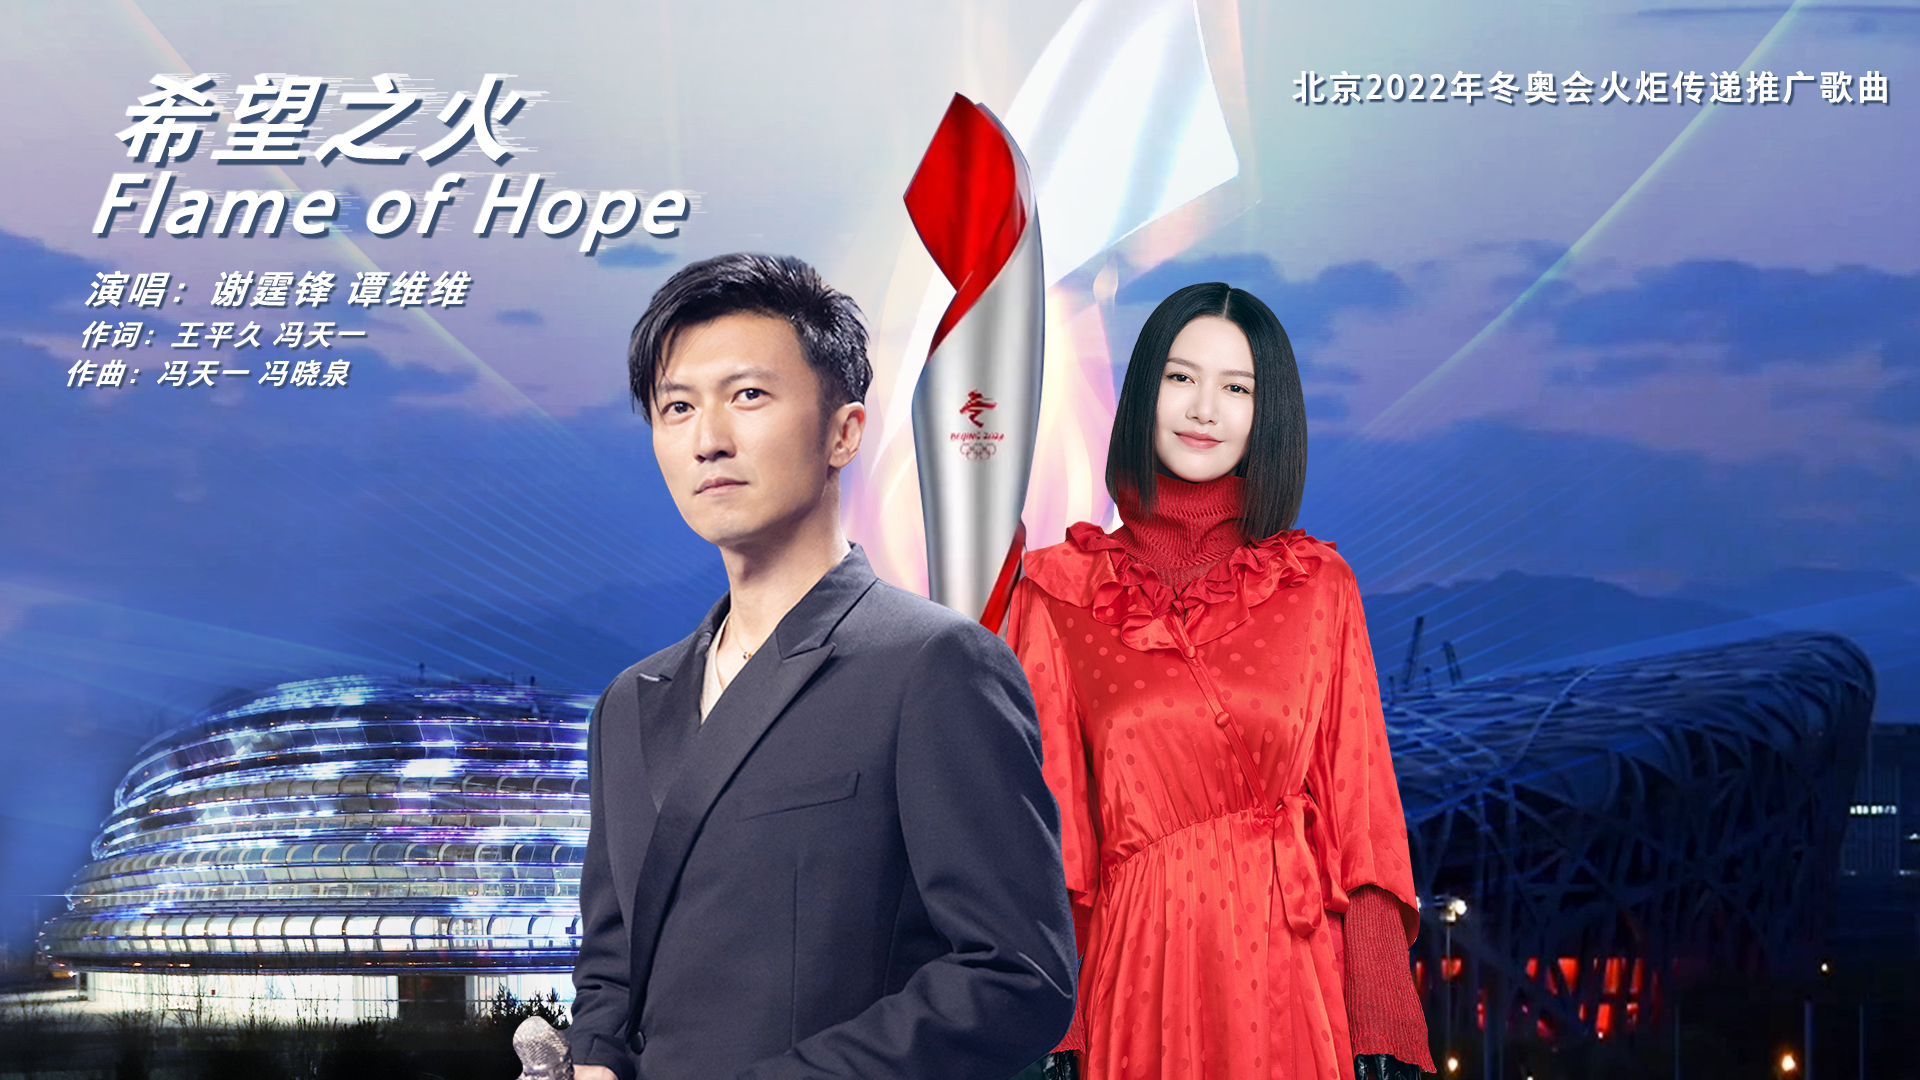 北京2022年冬奧會火炬傳遞推廣歌曲《希望之火》